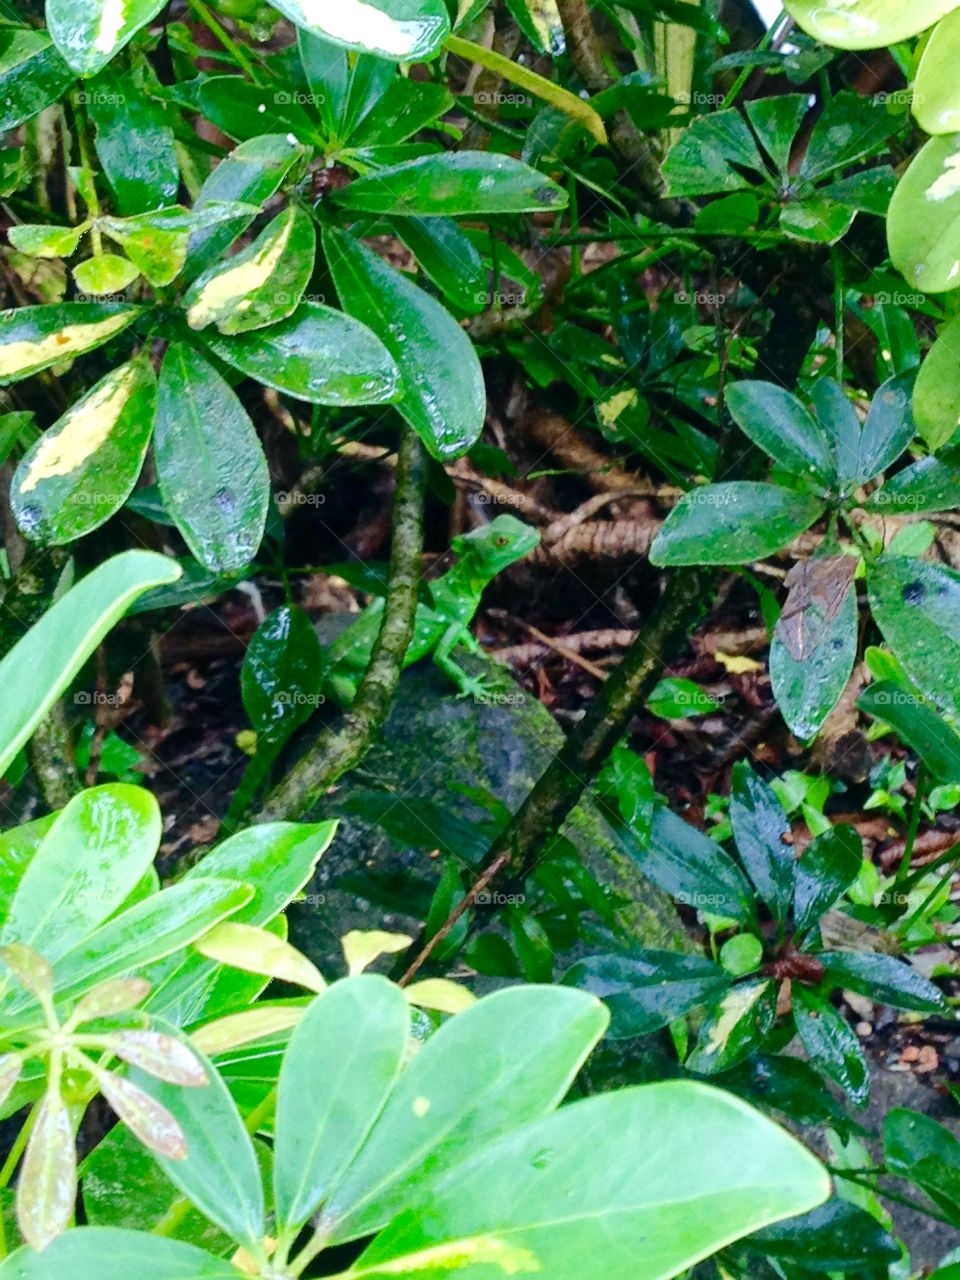 Hidden Lizard. A green lizard blending in with the leaves